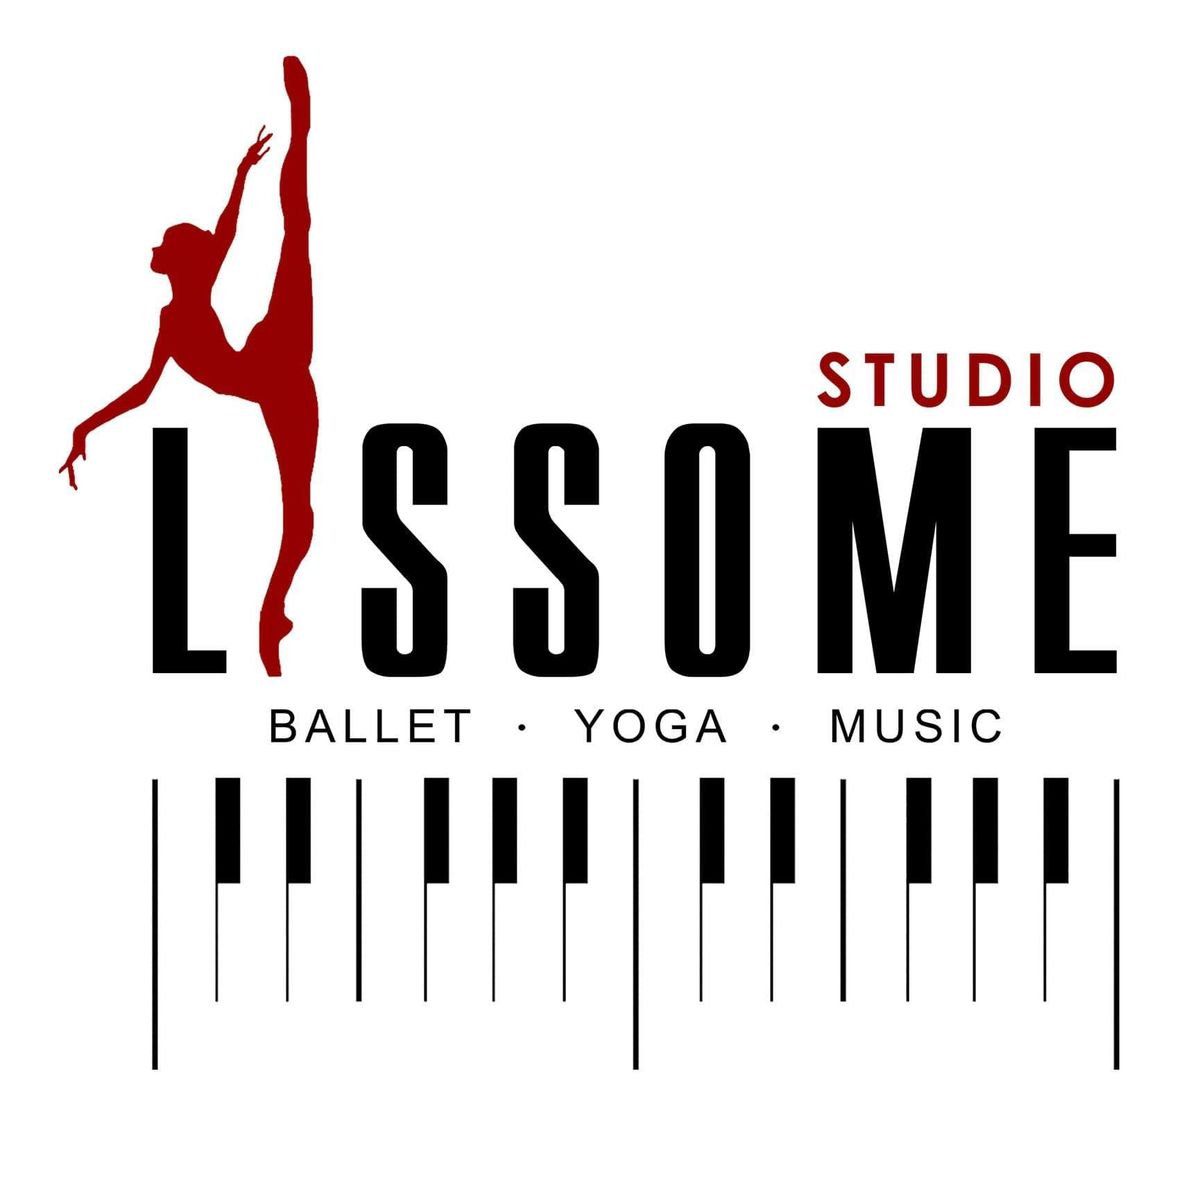 Ганцаарчилсан болон насанд хүрэгчдийн төгөлдөр хуурын хичээл, хүүхдийн балетын боловсролд зориулан сургалт явуулдаг "Lissom ballet studio"-д суралцахыг хүсвэл MSPORTS app-аар дамжуулан бүртгүүлээрэй.